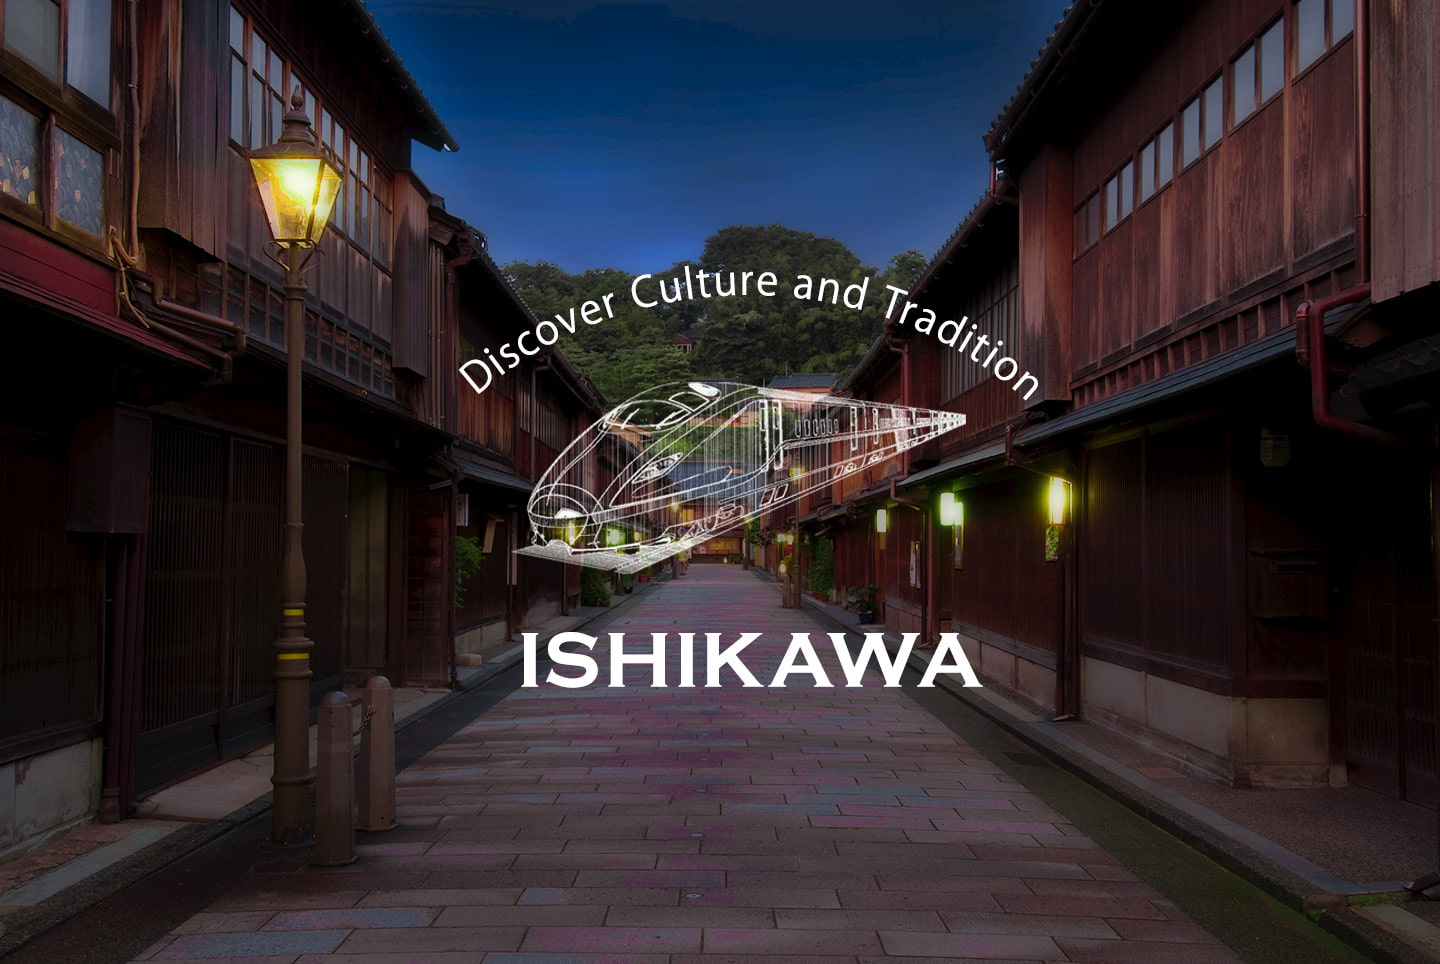 Basic Information About Ishikawa